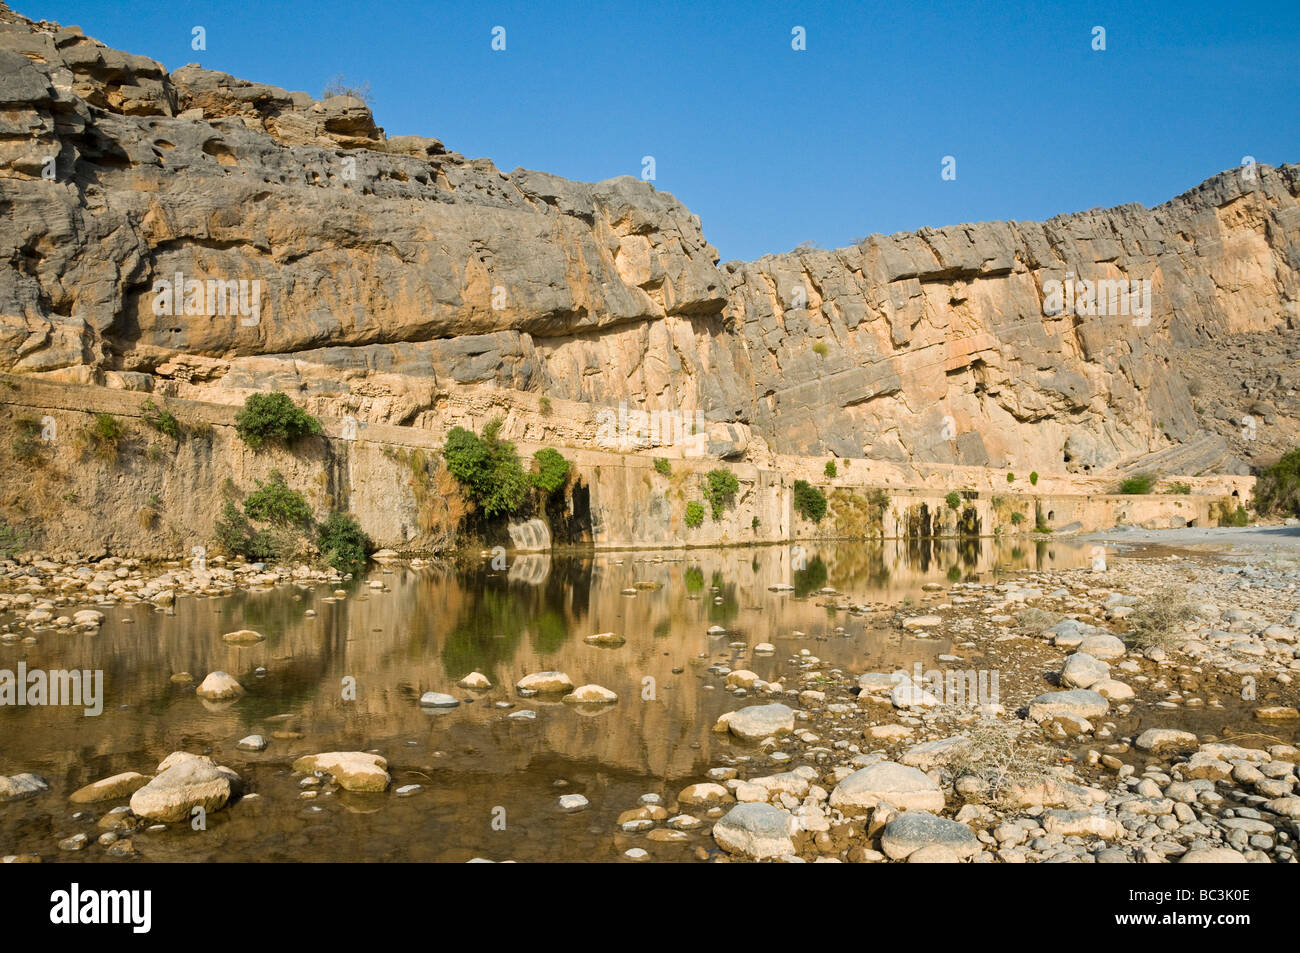 Wadi Ghul región Dakhiliyah al Sultanato de Omán Foto de stock